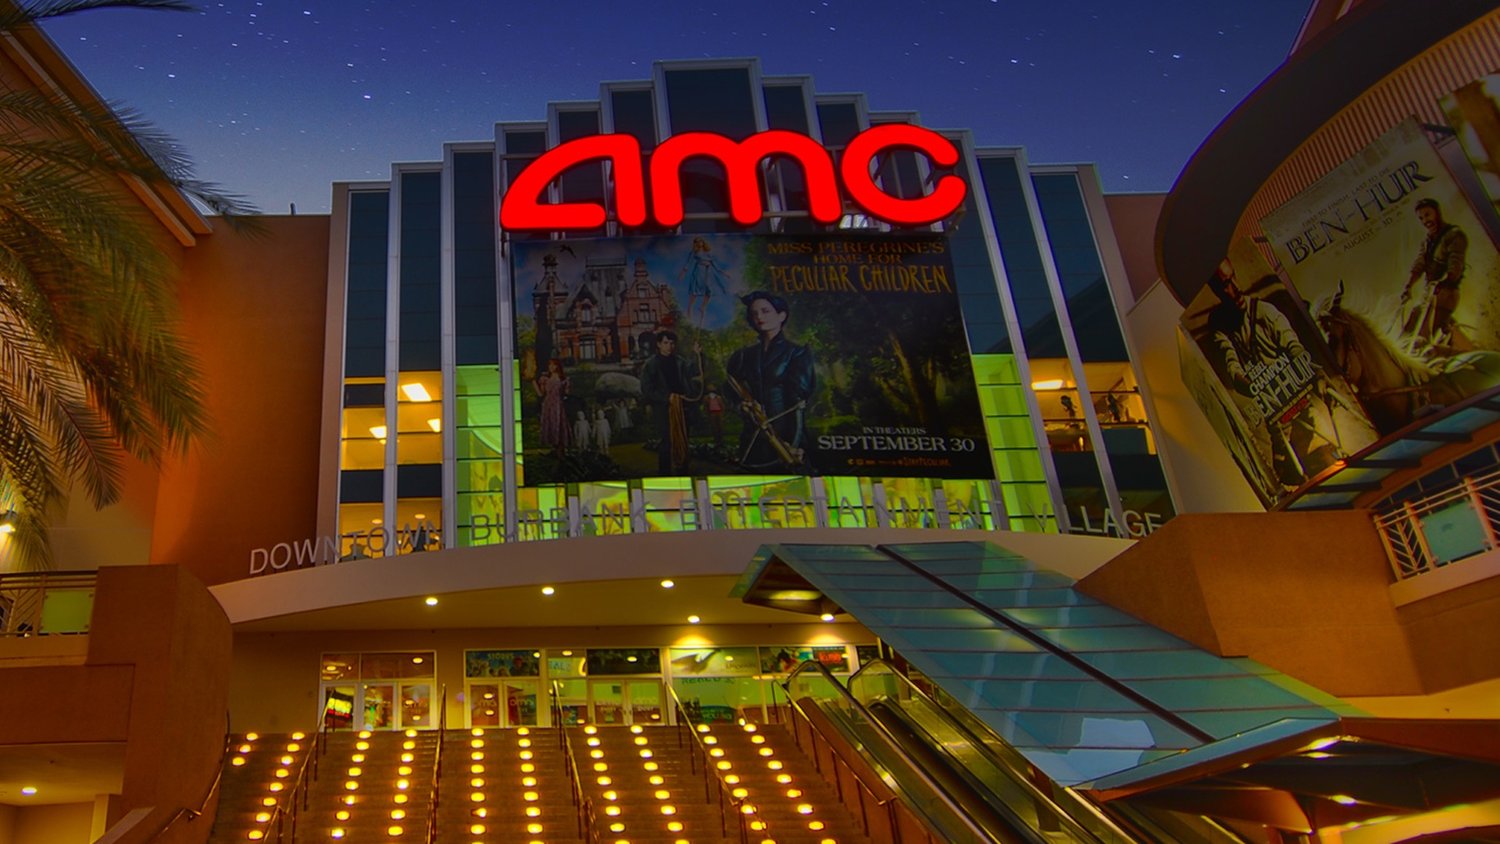 Les cinémas AMC commenceront à facturer plus pour de meilleurs sièges ;  Elijah Wood leur reproche de pénaliser les personnes à faible revenu